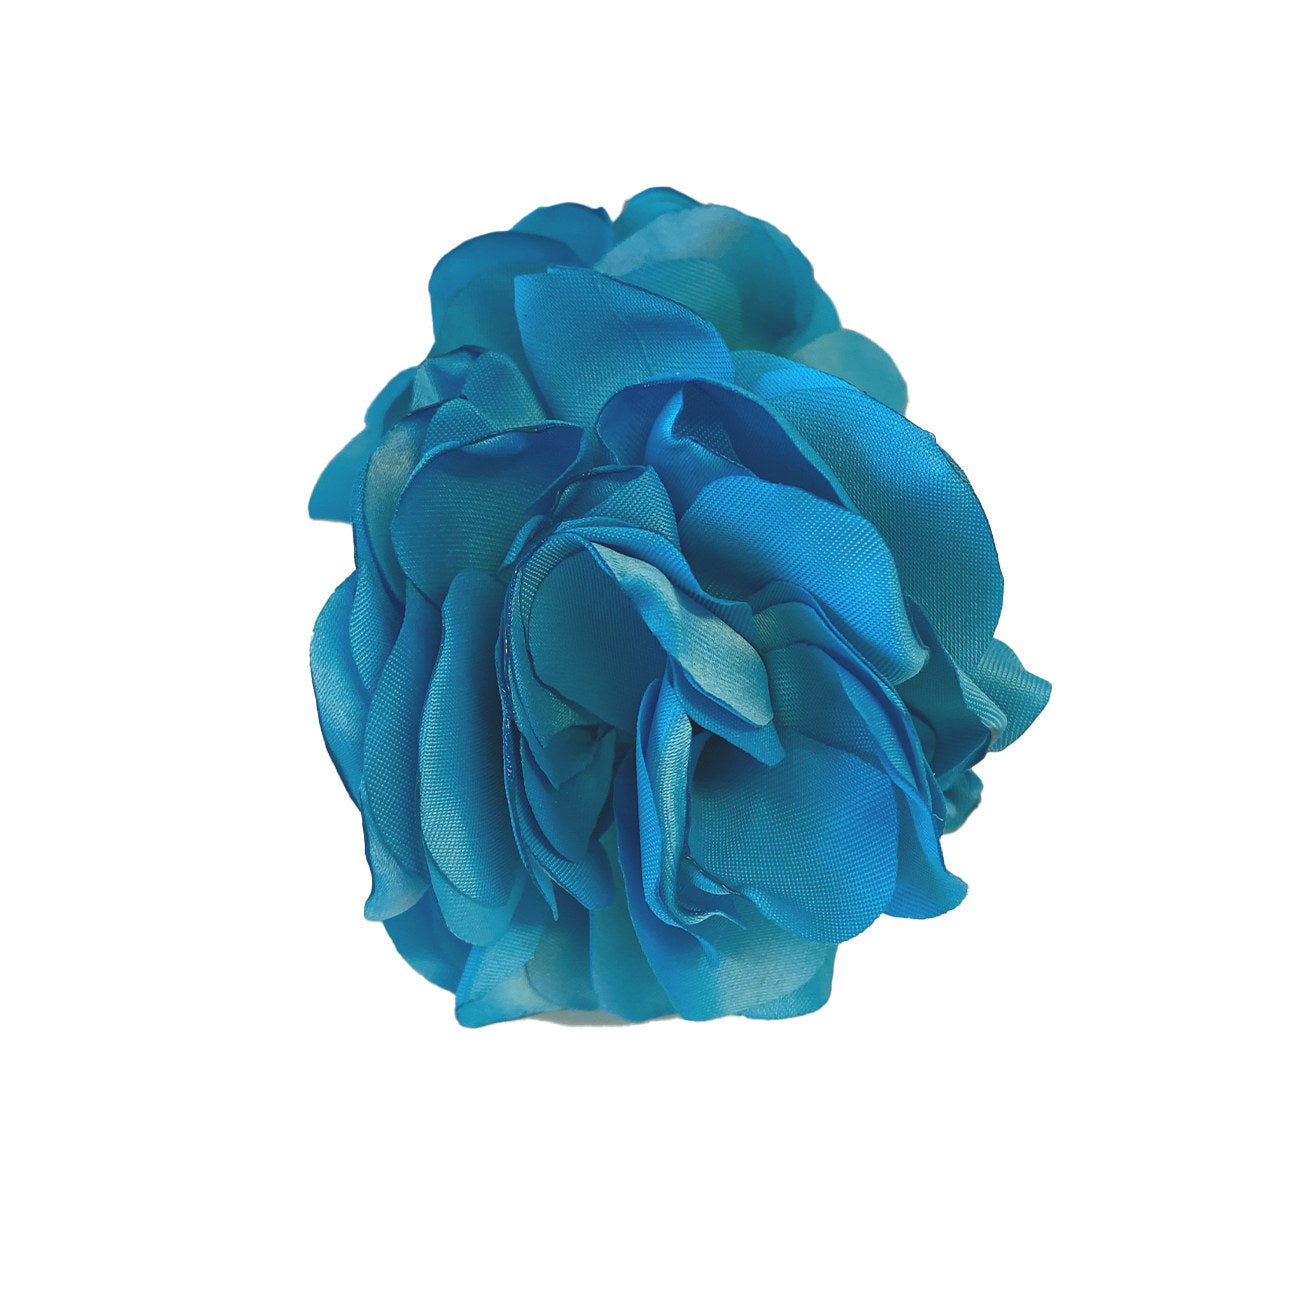 Rose Hårklemme - Blå